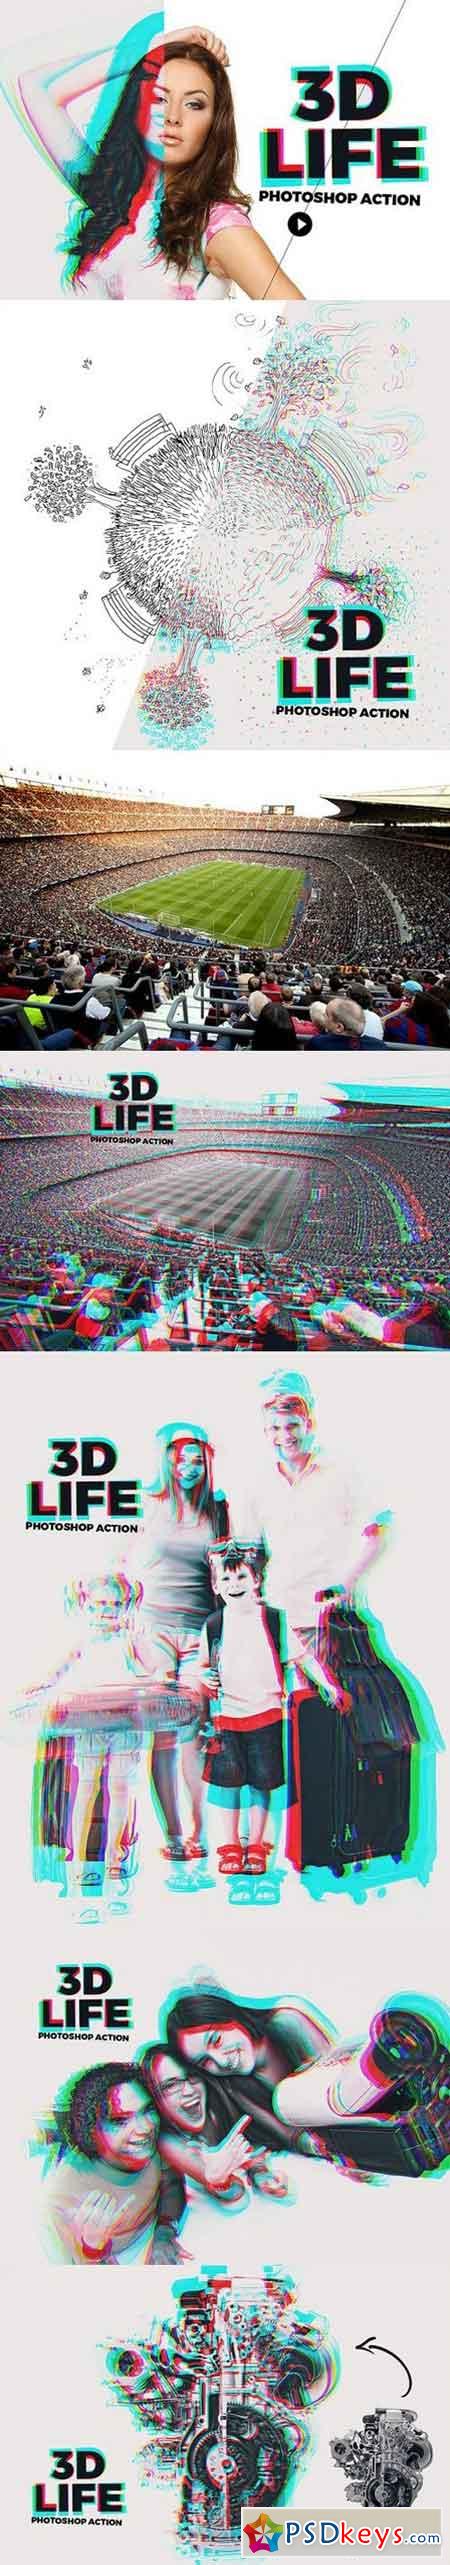 3D Life - Photoshop Action 1605107